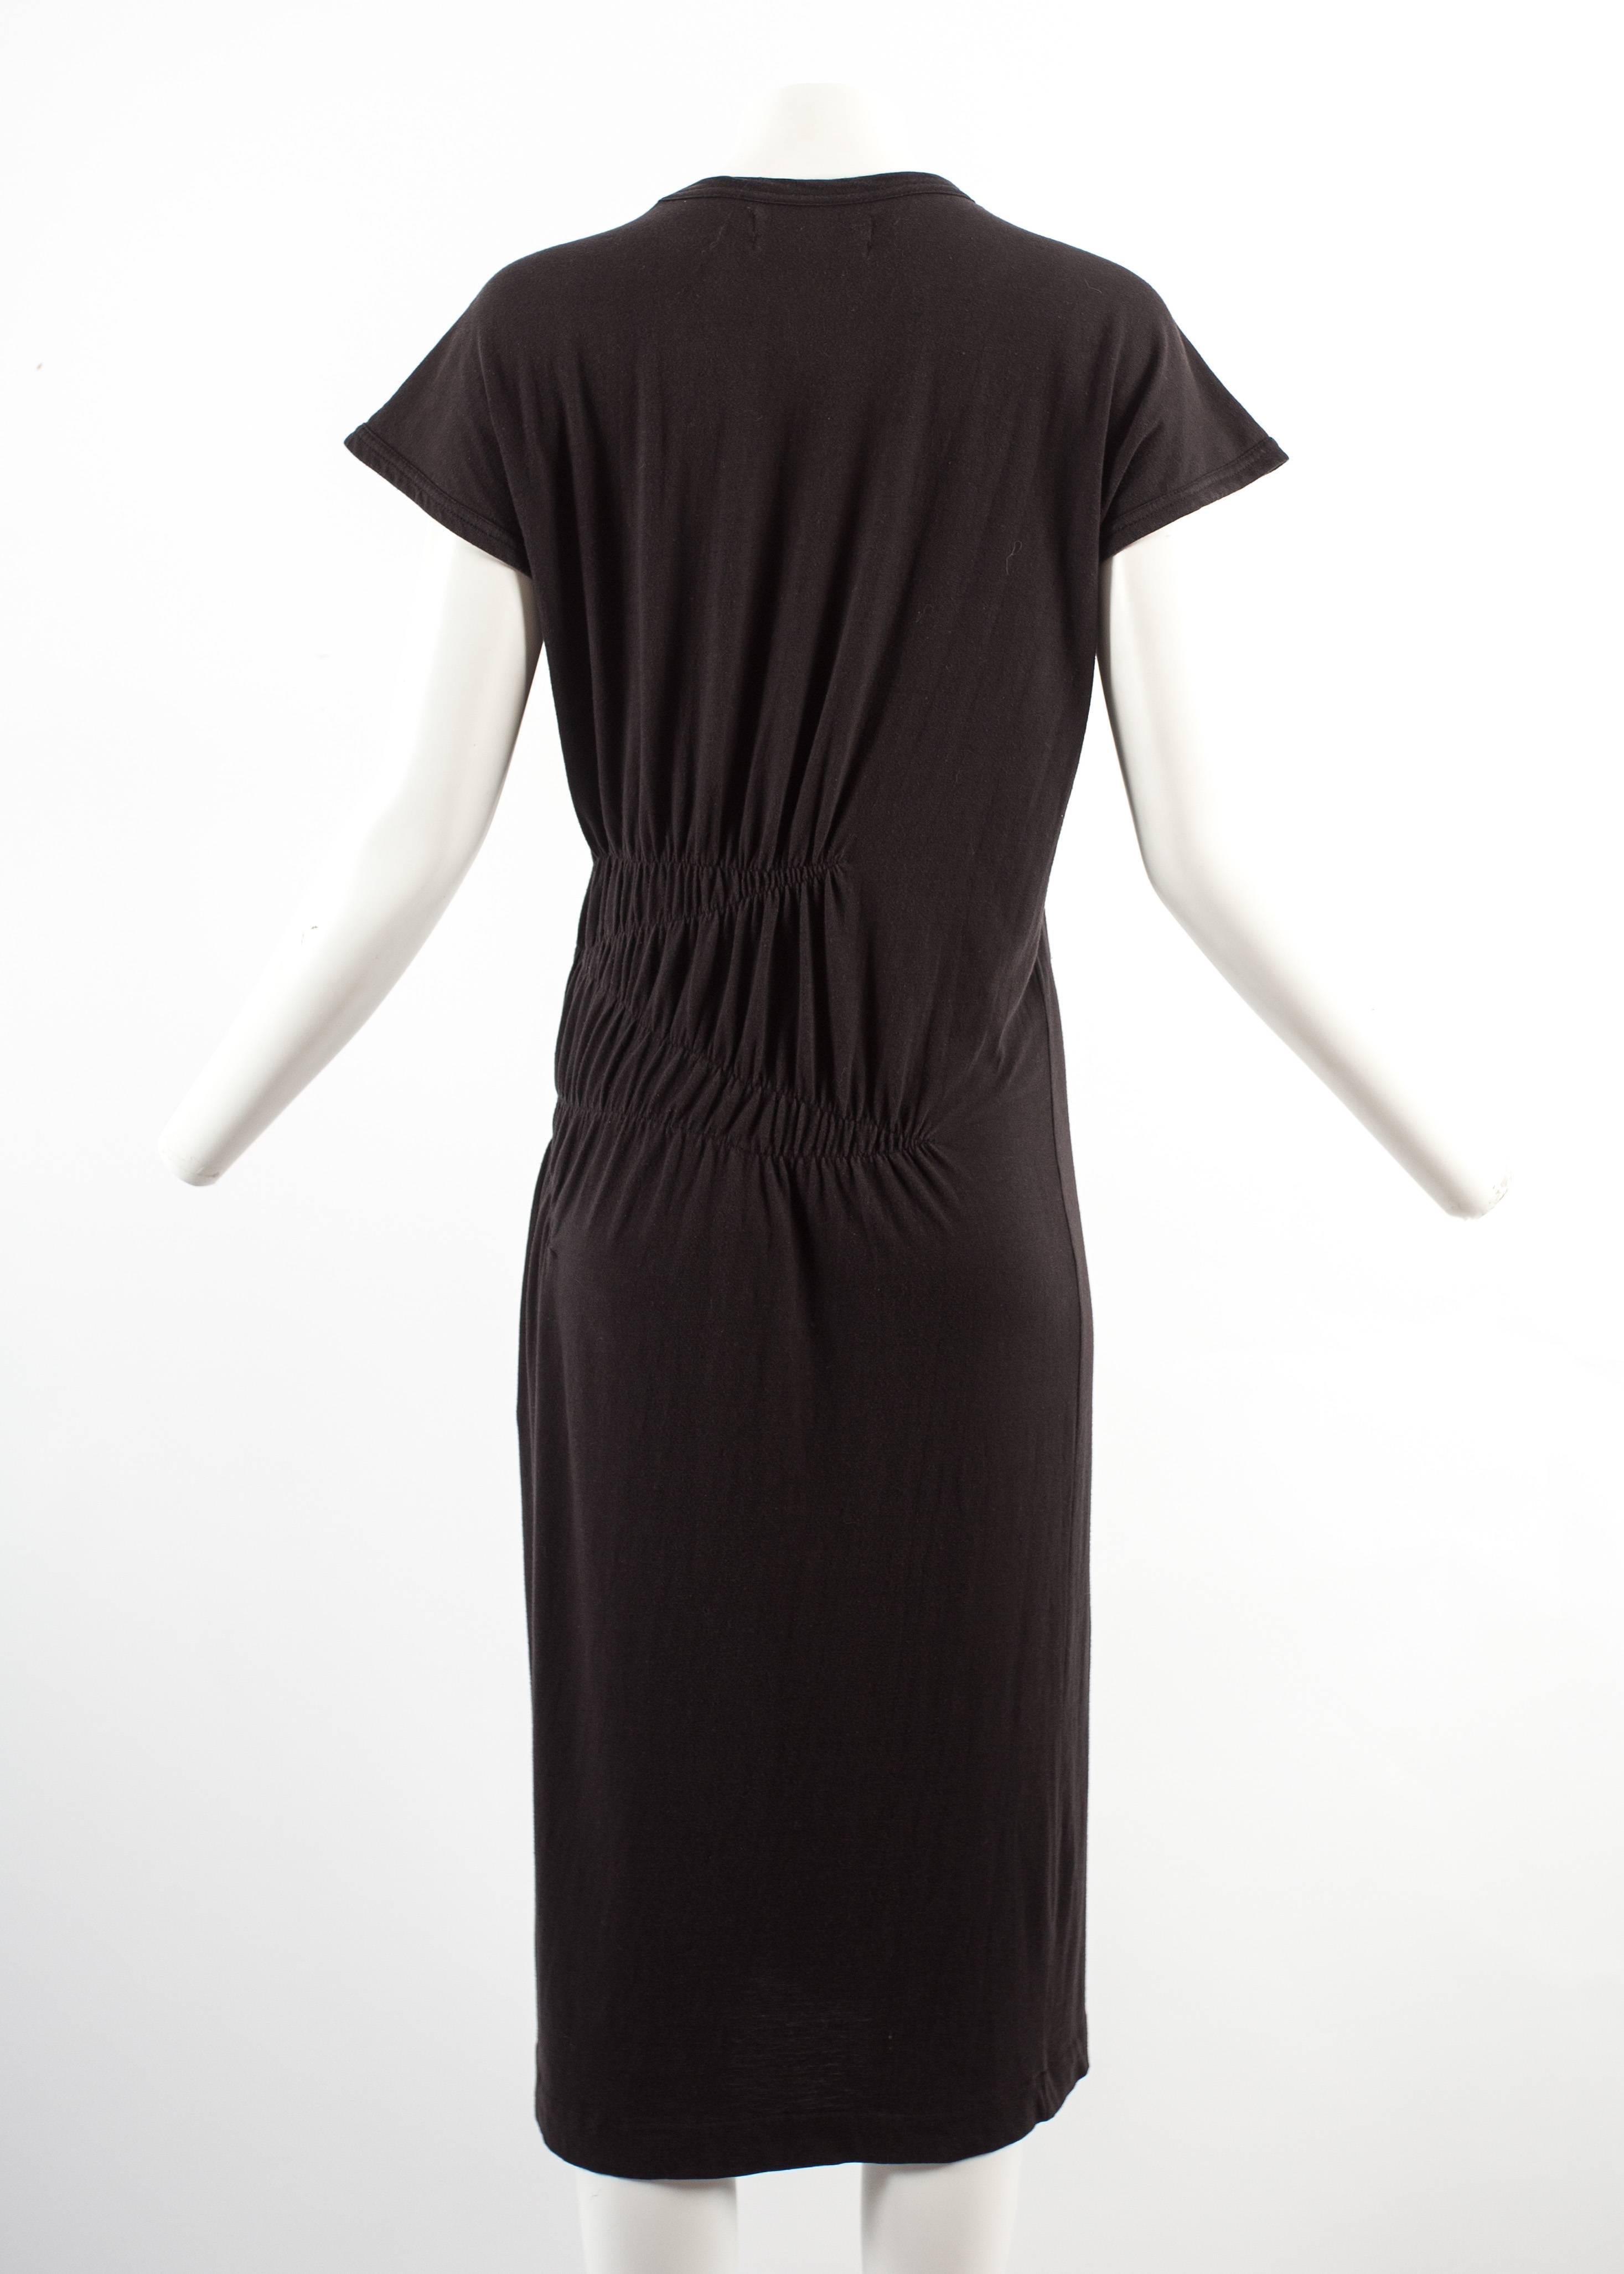 Black Comme des Garcons 1983-84 black cotton smocked dress